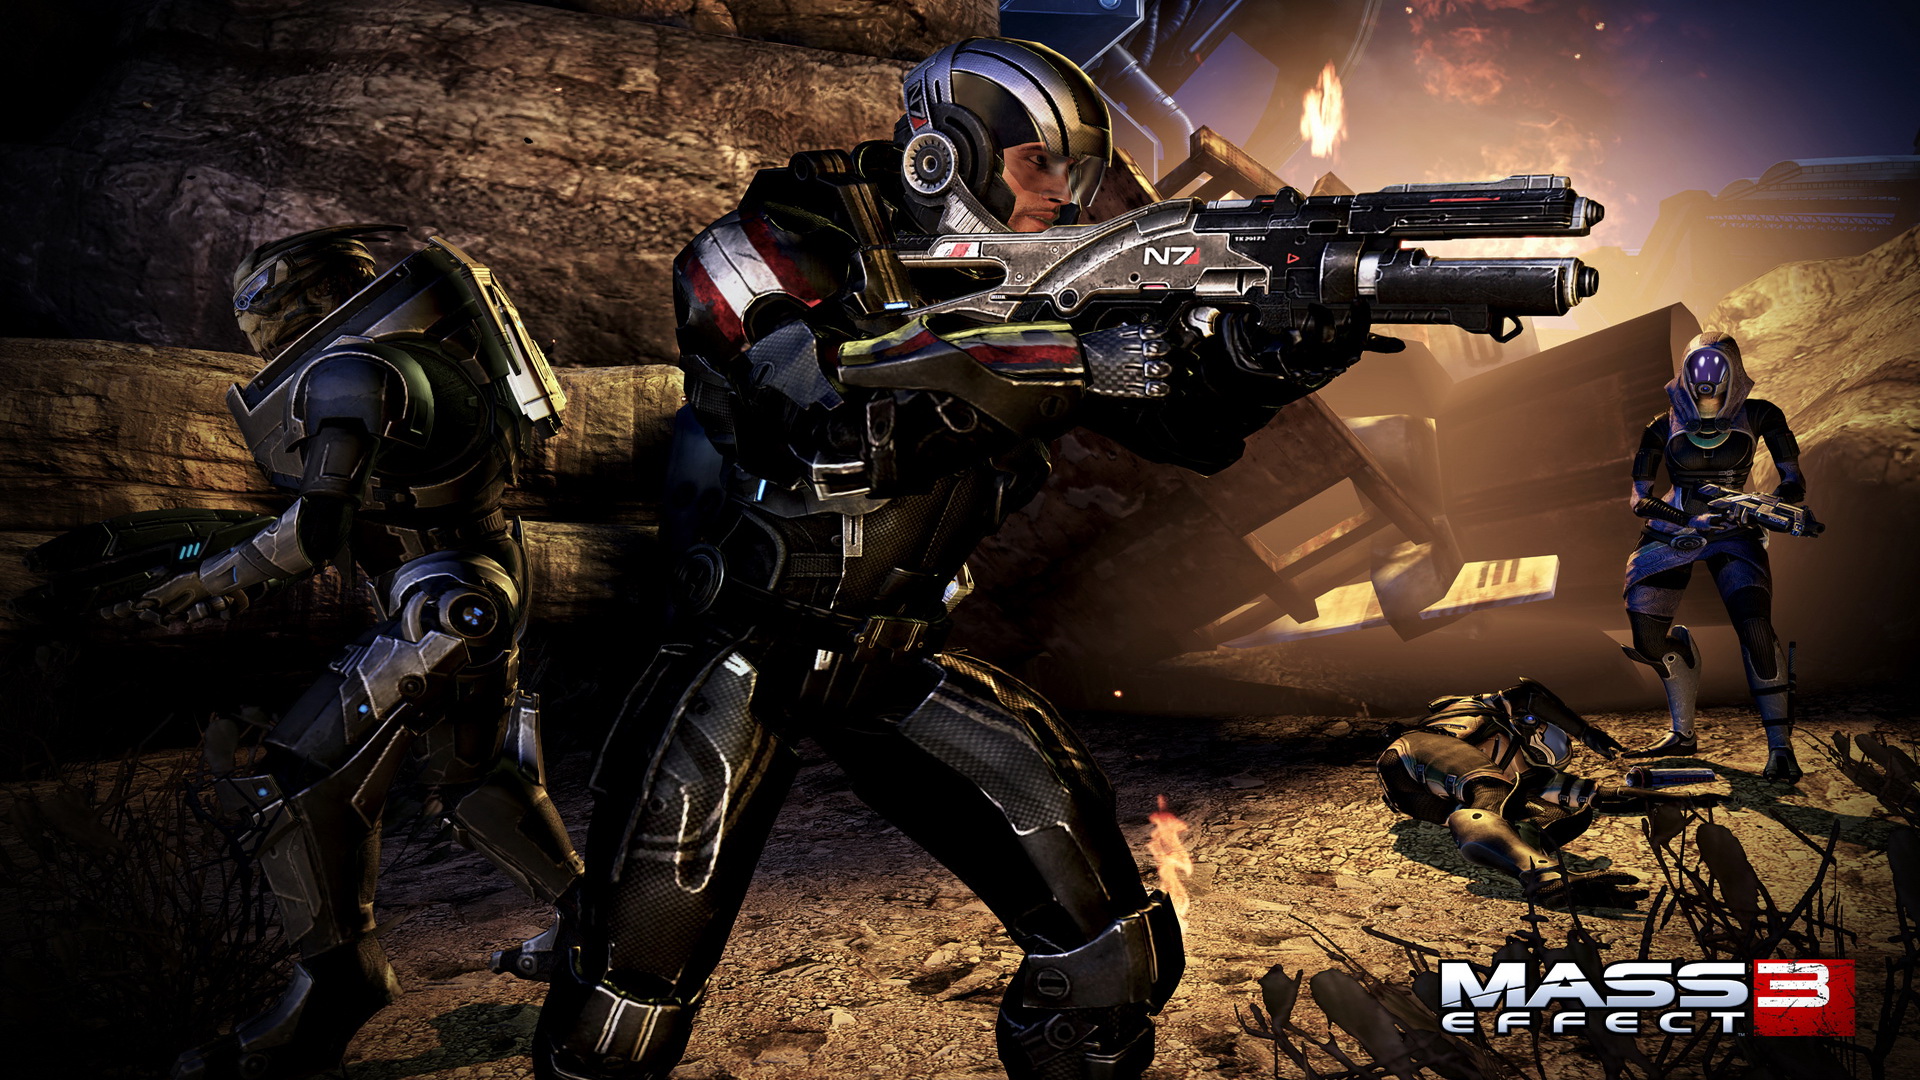 Mass Effect Wallpaper Game HD Video Games 1080p